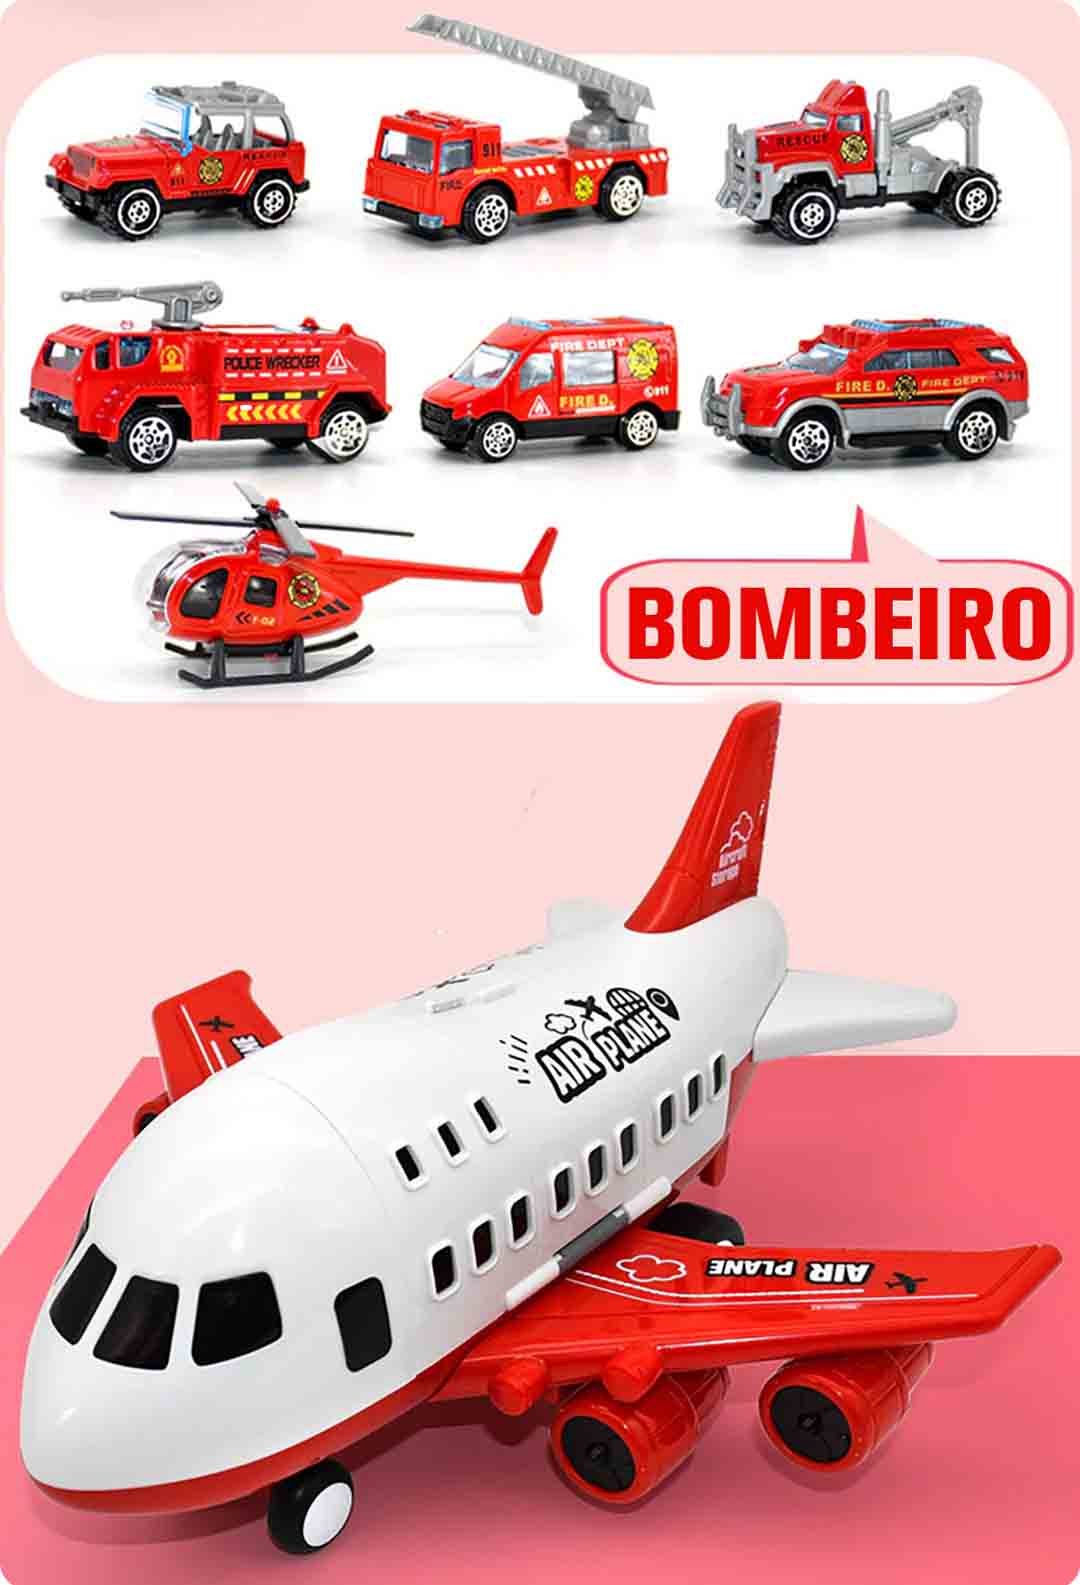 Modelo Bombeiro do Jumbo® Avião de Brinquedo c/ 6 Super Carrinhos Disponível em: www.descontara.com